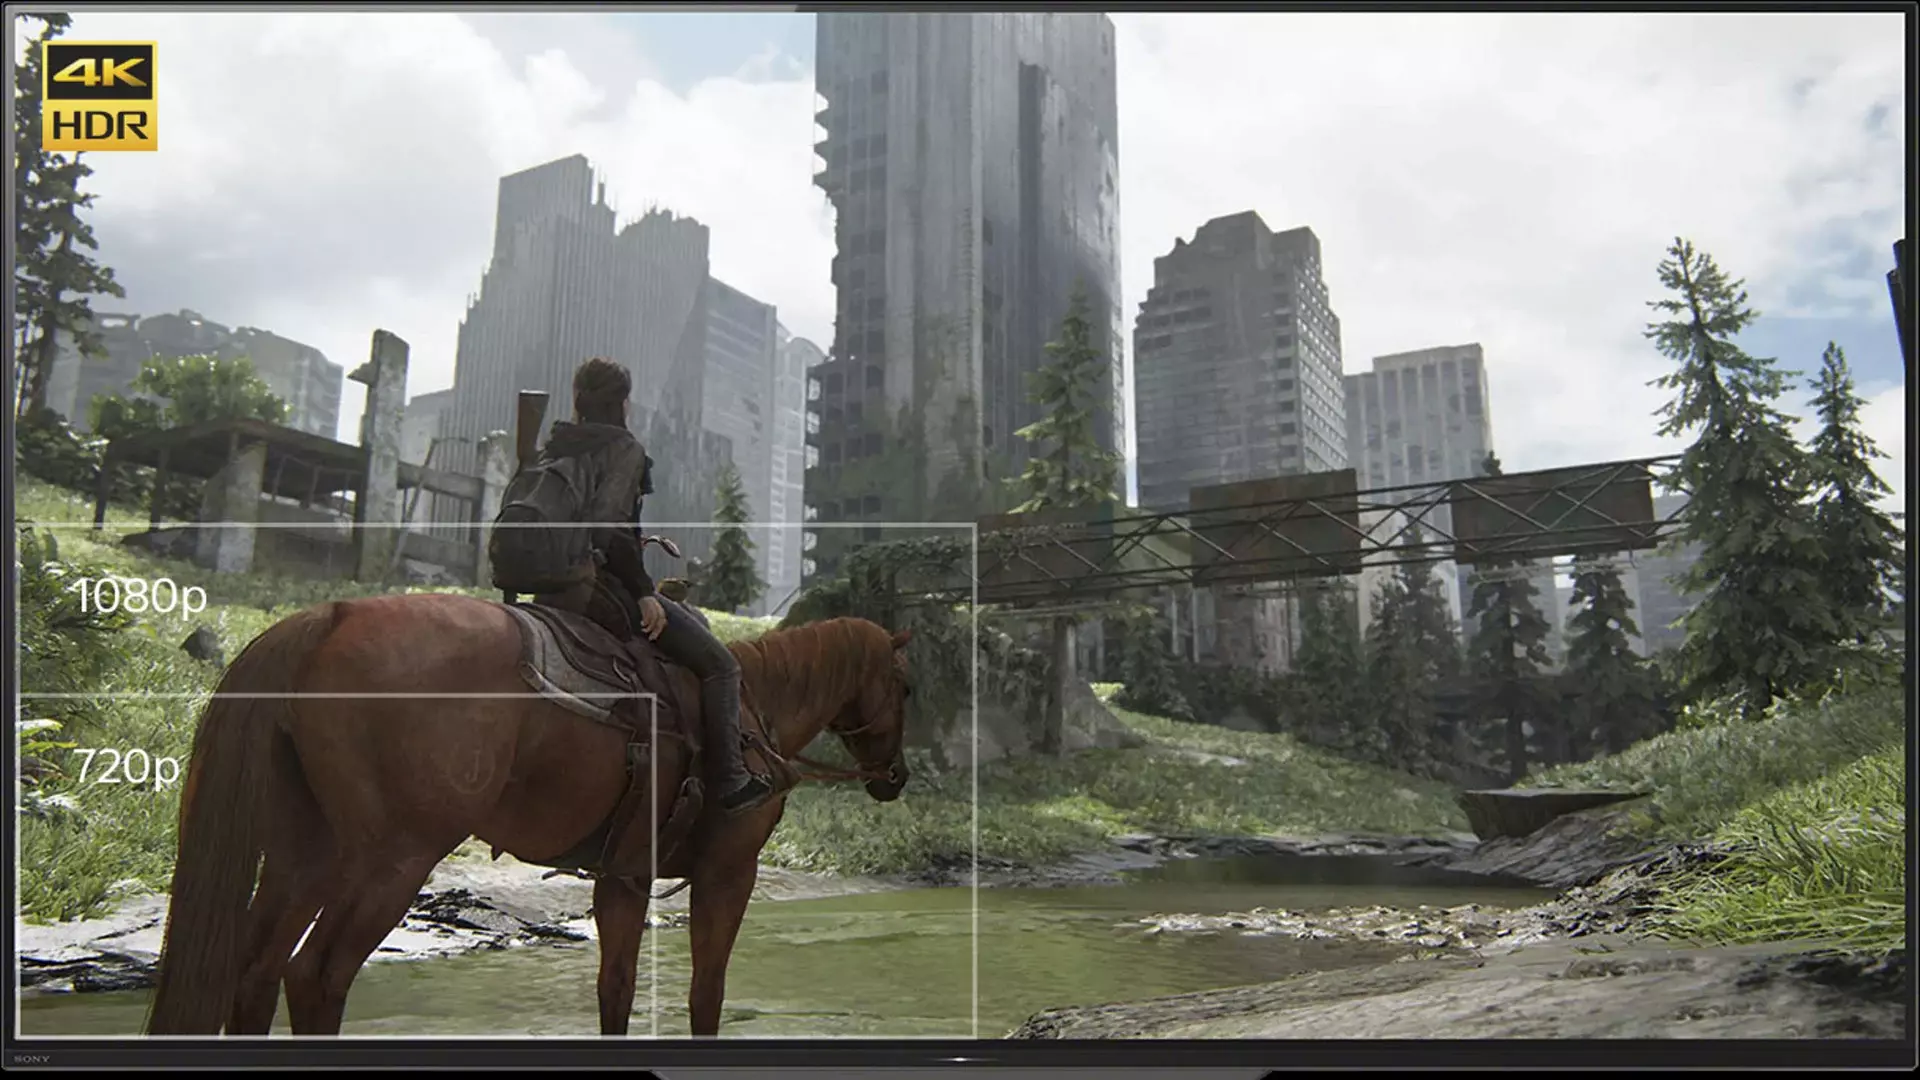 PS4 ganhará atualização para reproduzir jogos na tecnologia HDR